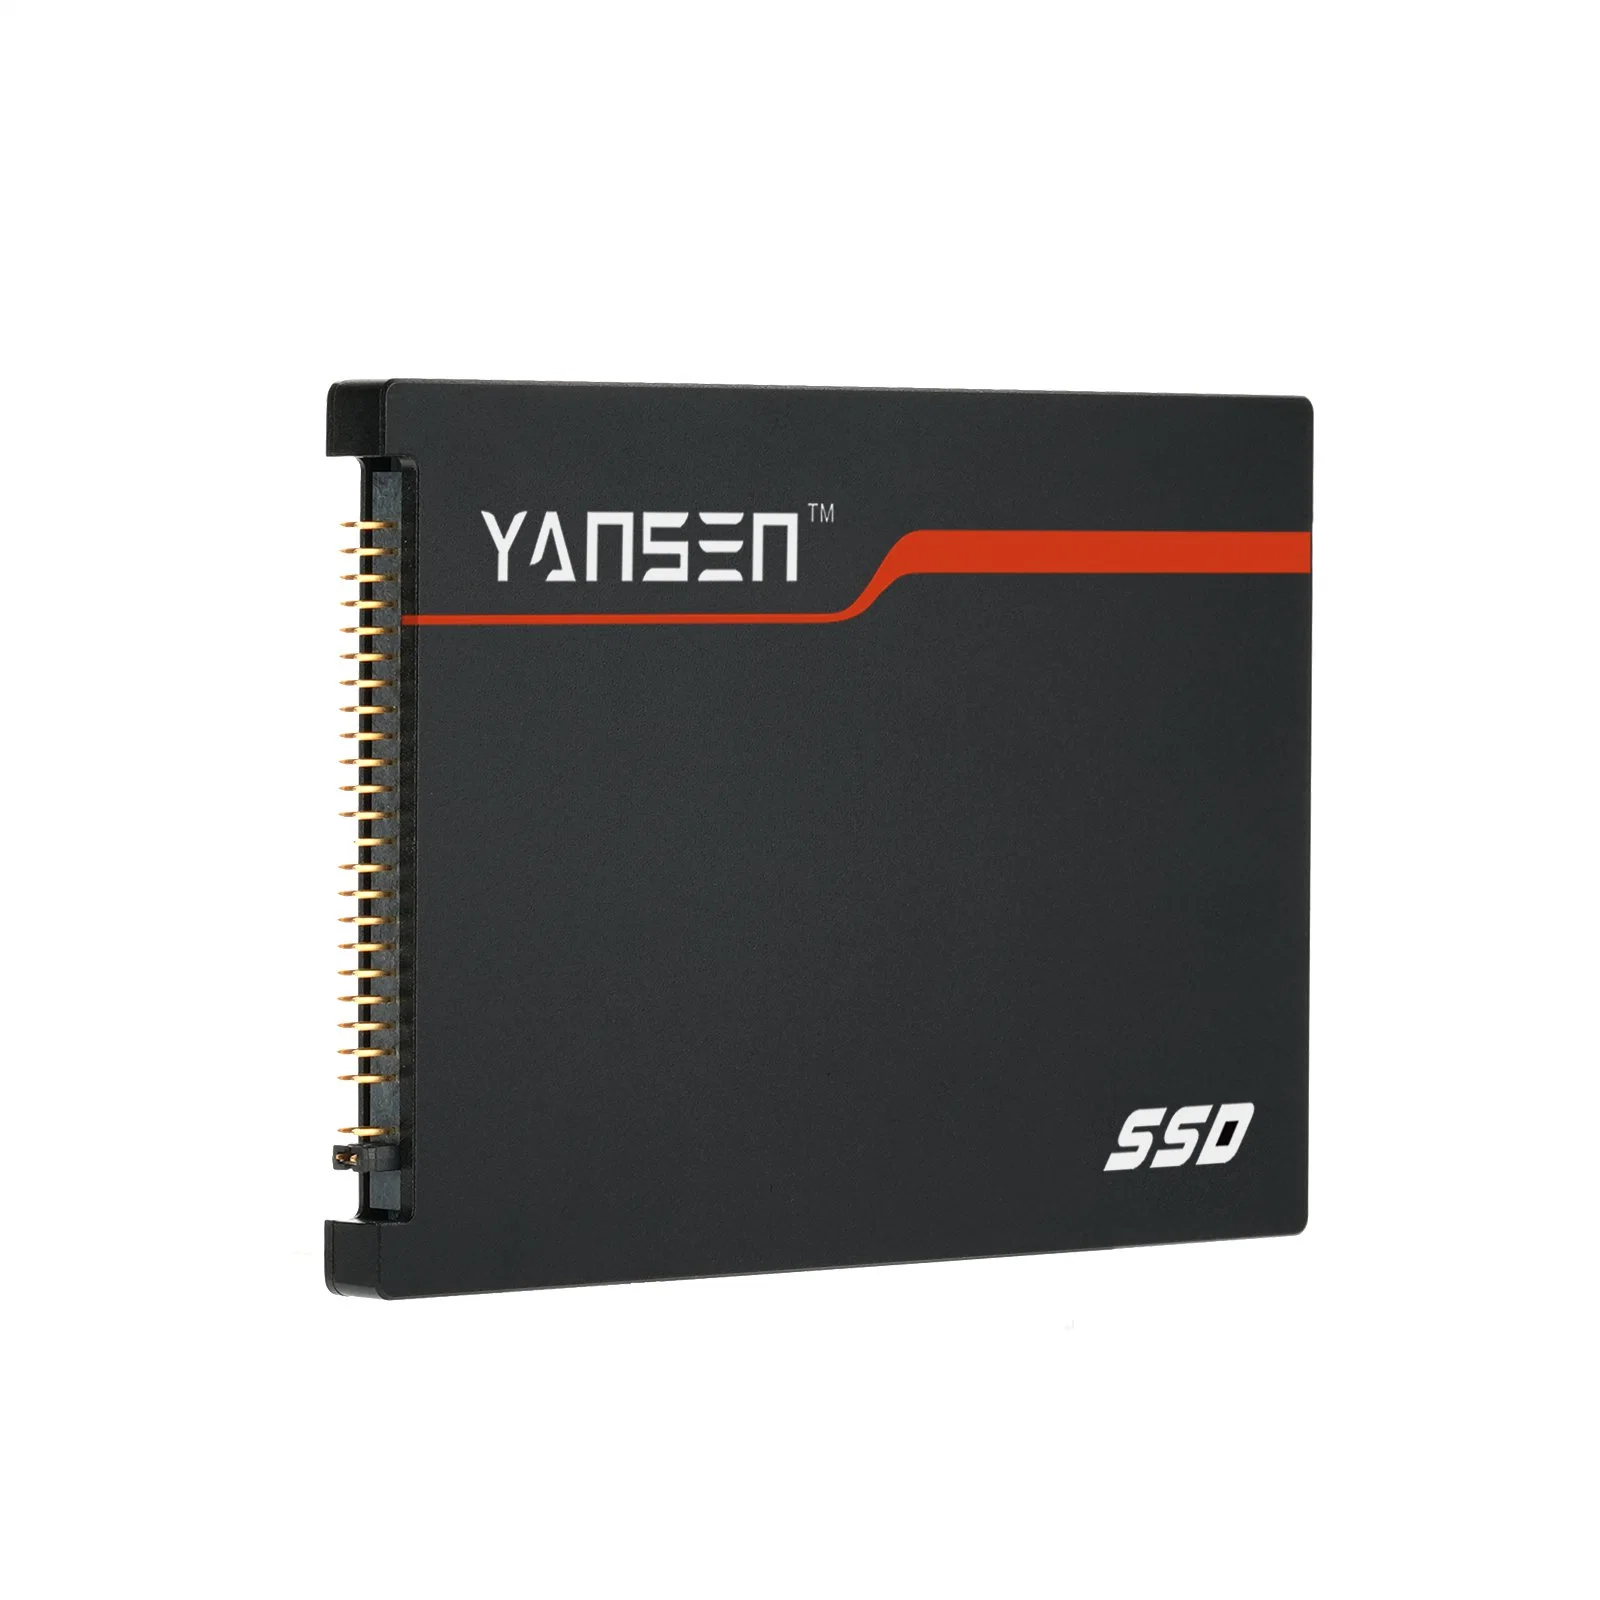 Yansen 2,5" PATA промышленных диска SSD старые технологии хранения для PATA встраиваемых систем хранения